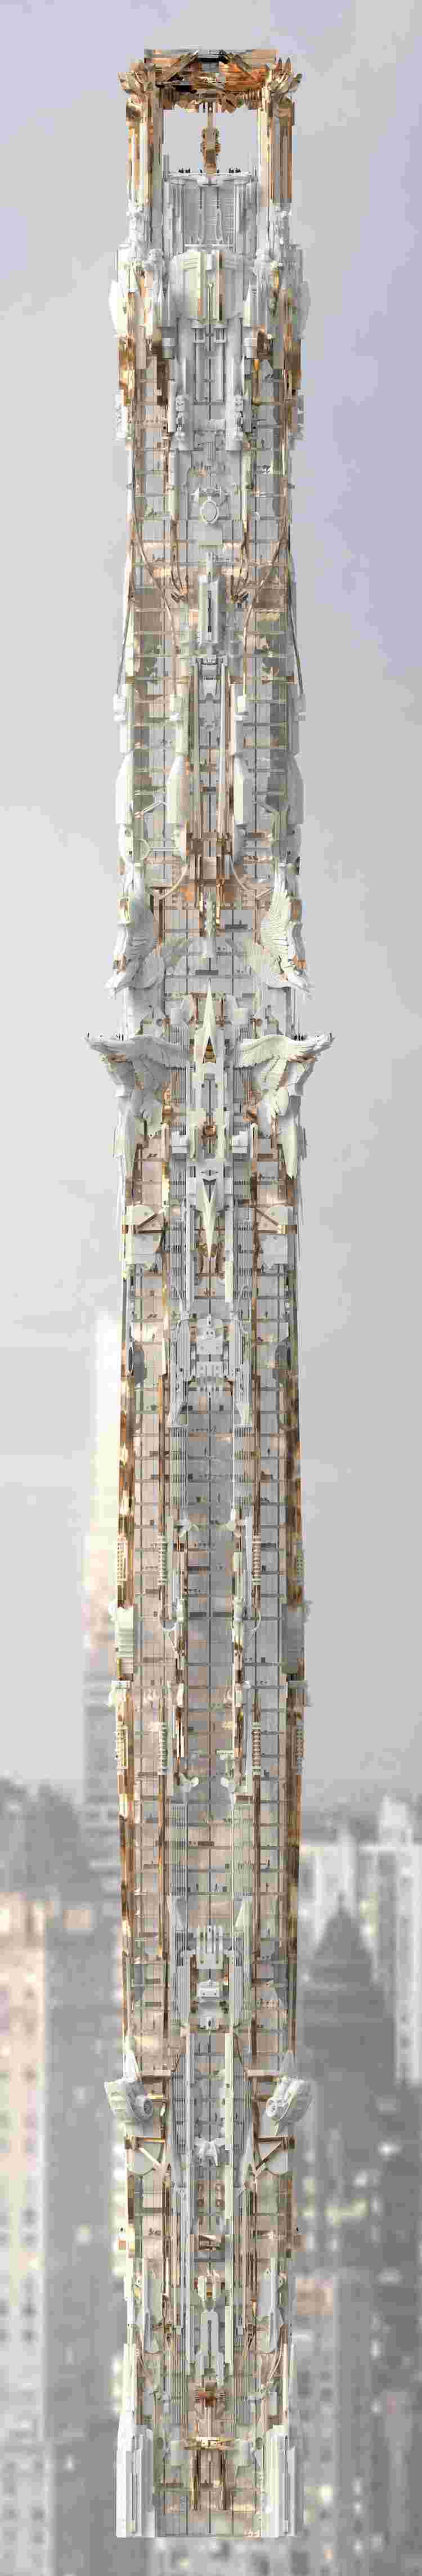 3d-visualisering-koncept-skyskrapa-manhattan-hela byggnaden-översikt